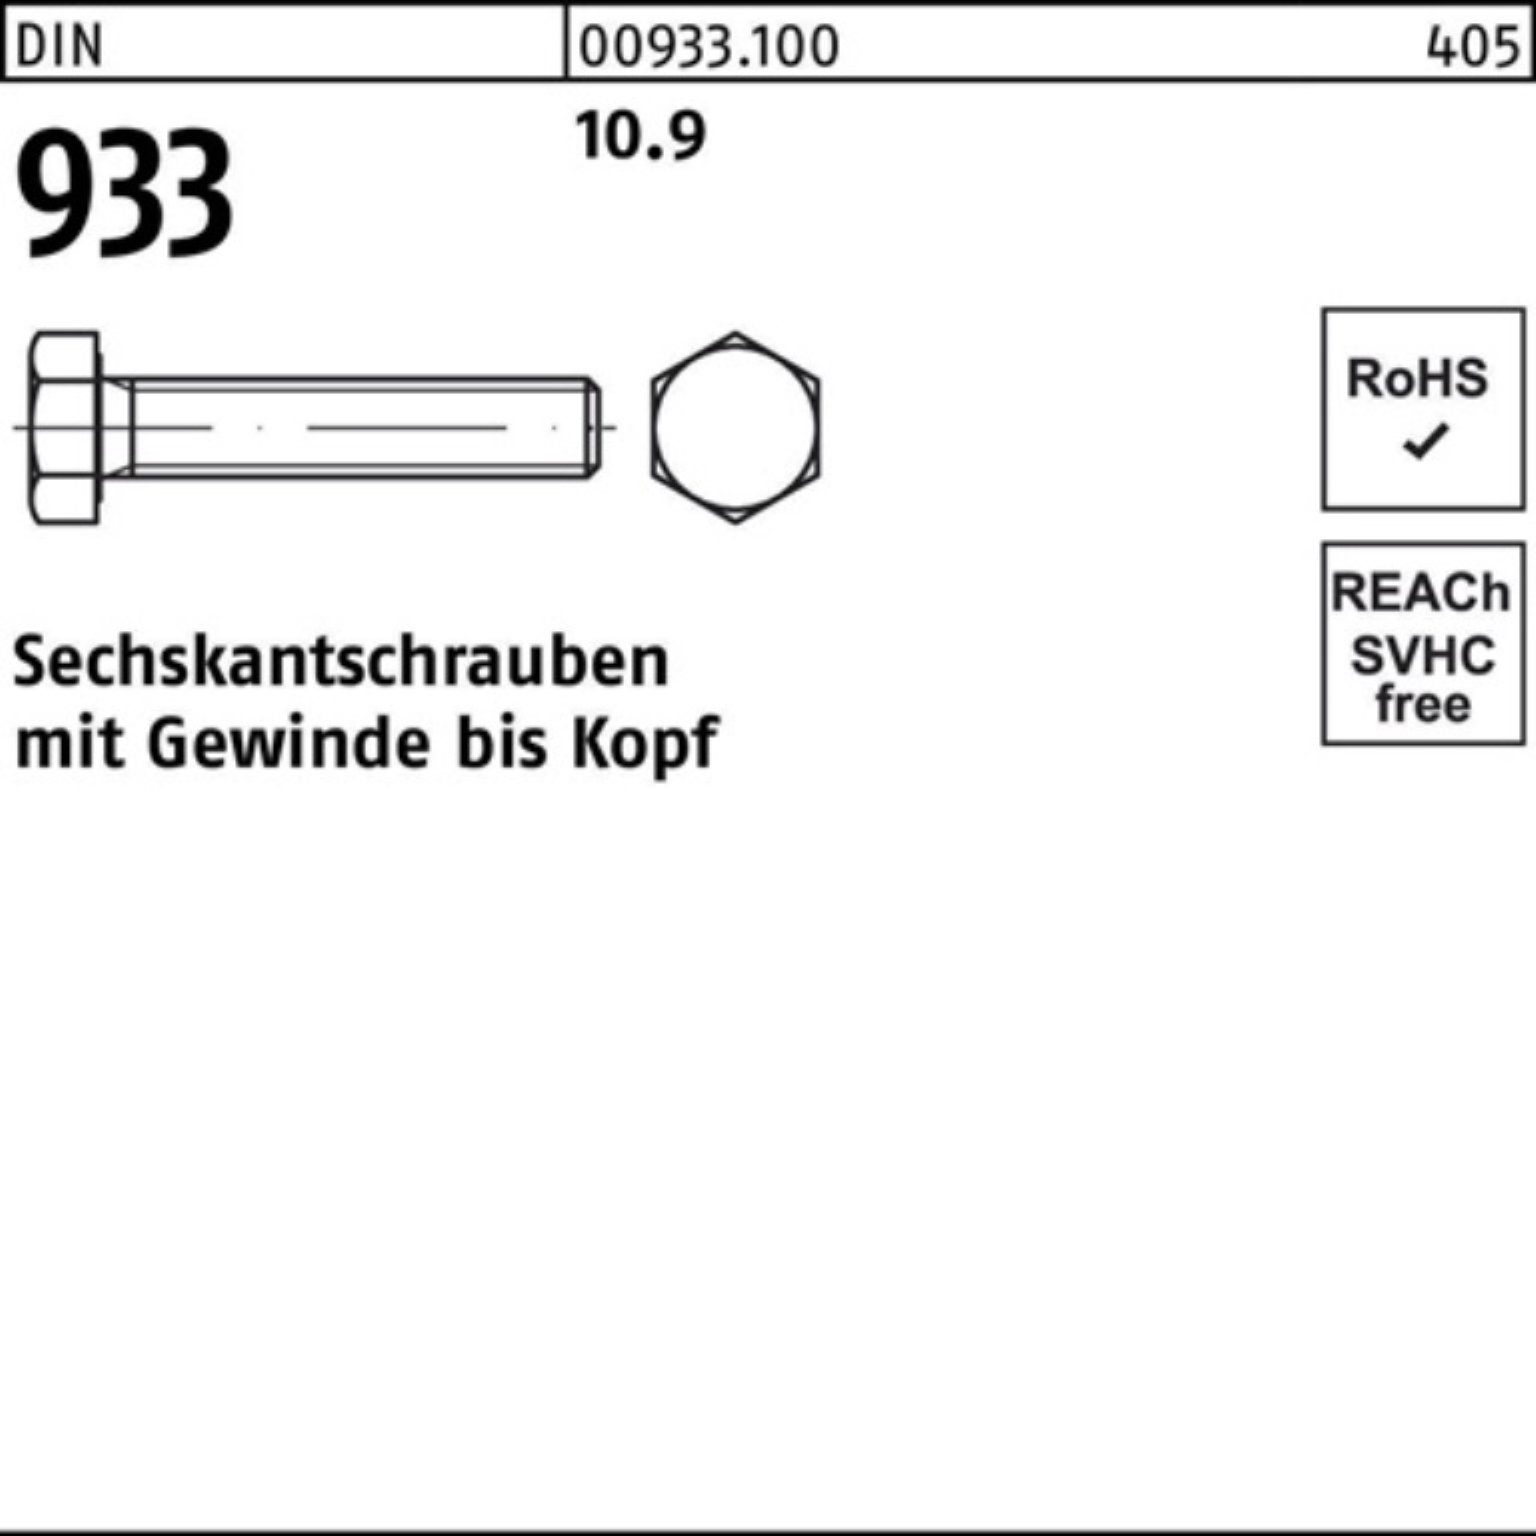 VG 180 10.9 Sechskantschraube Sechskantschraube 100er DIN Reyher 933 Stück 100 93 M8x DIN Pack